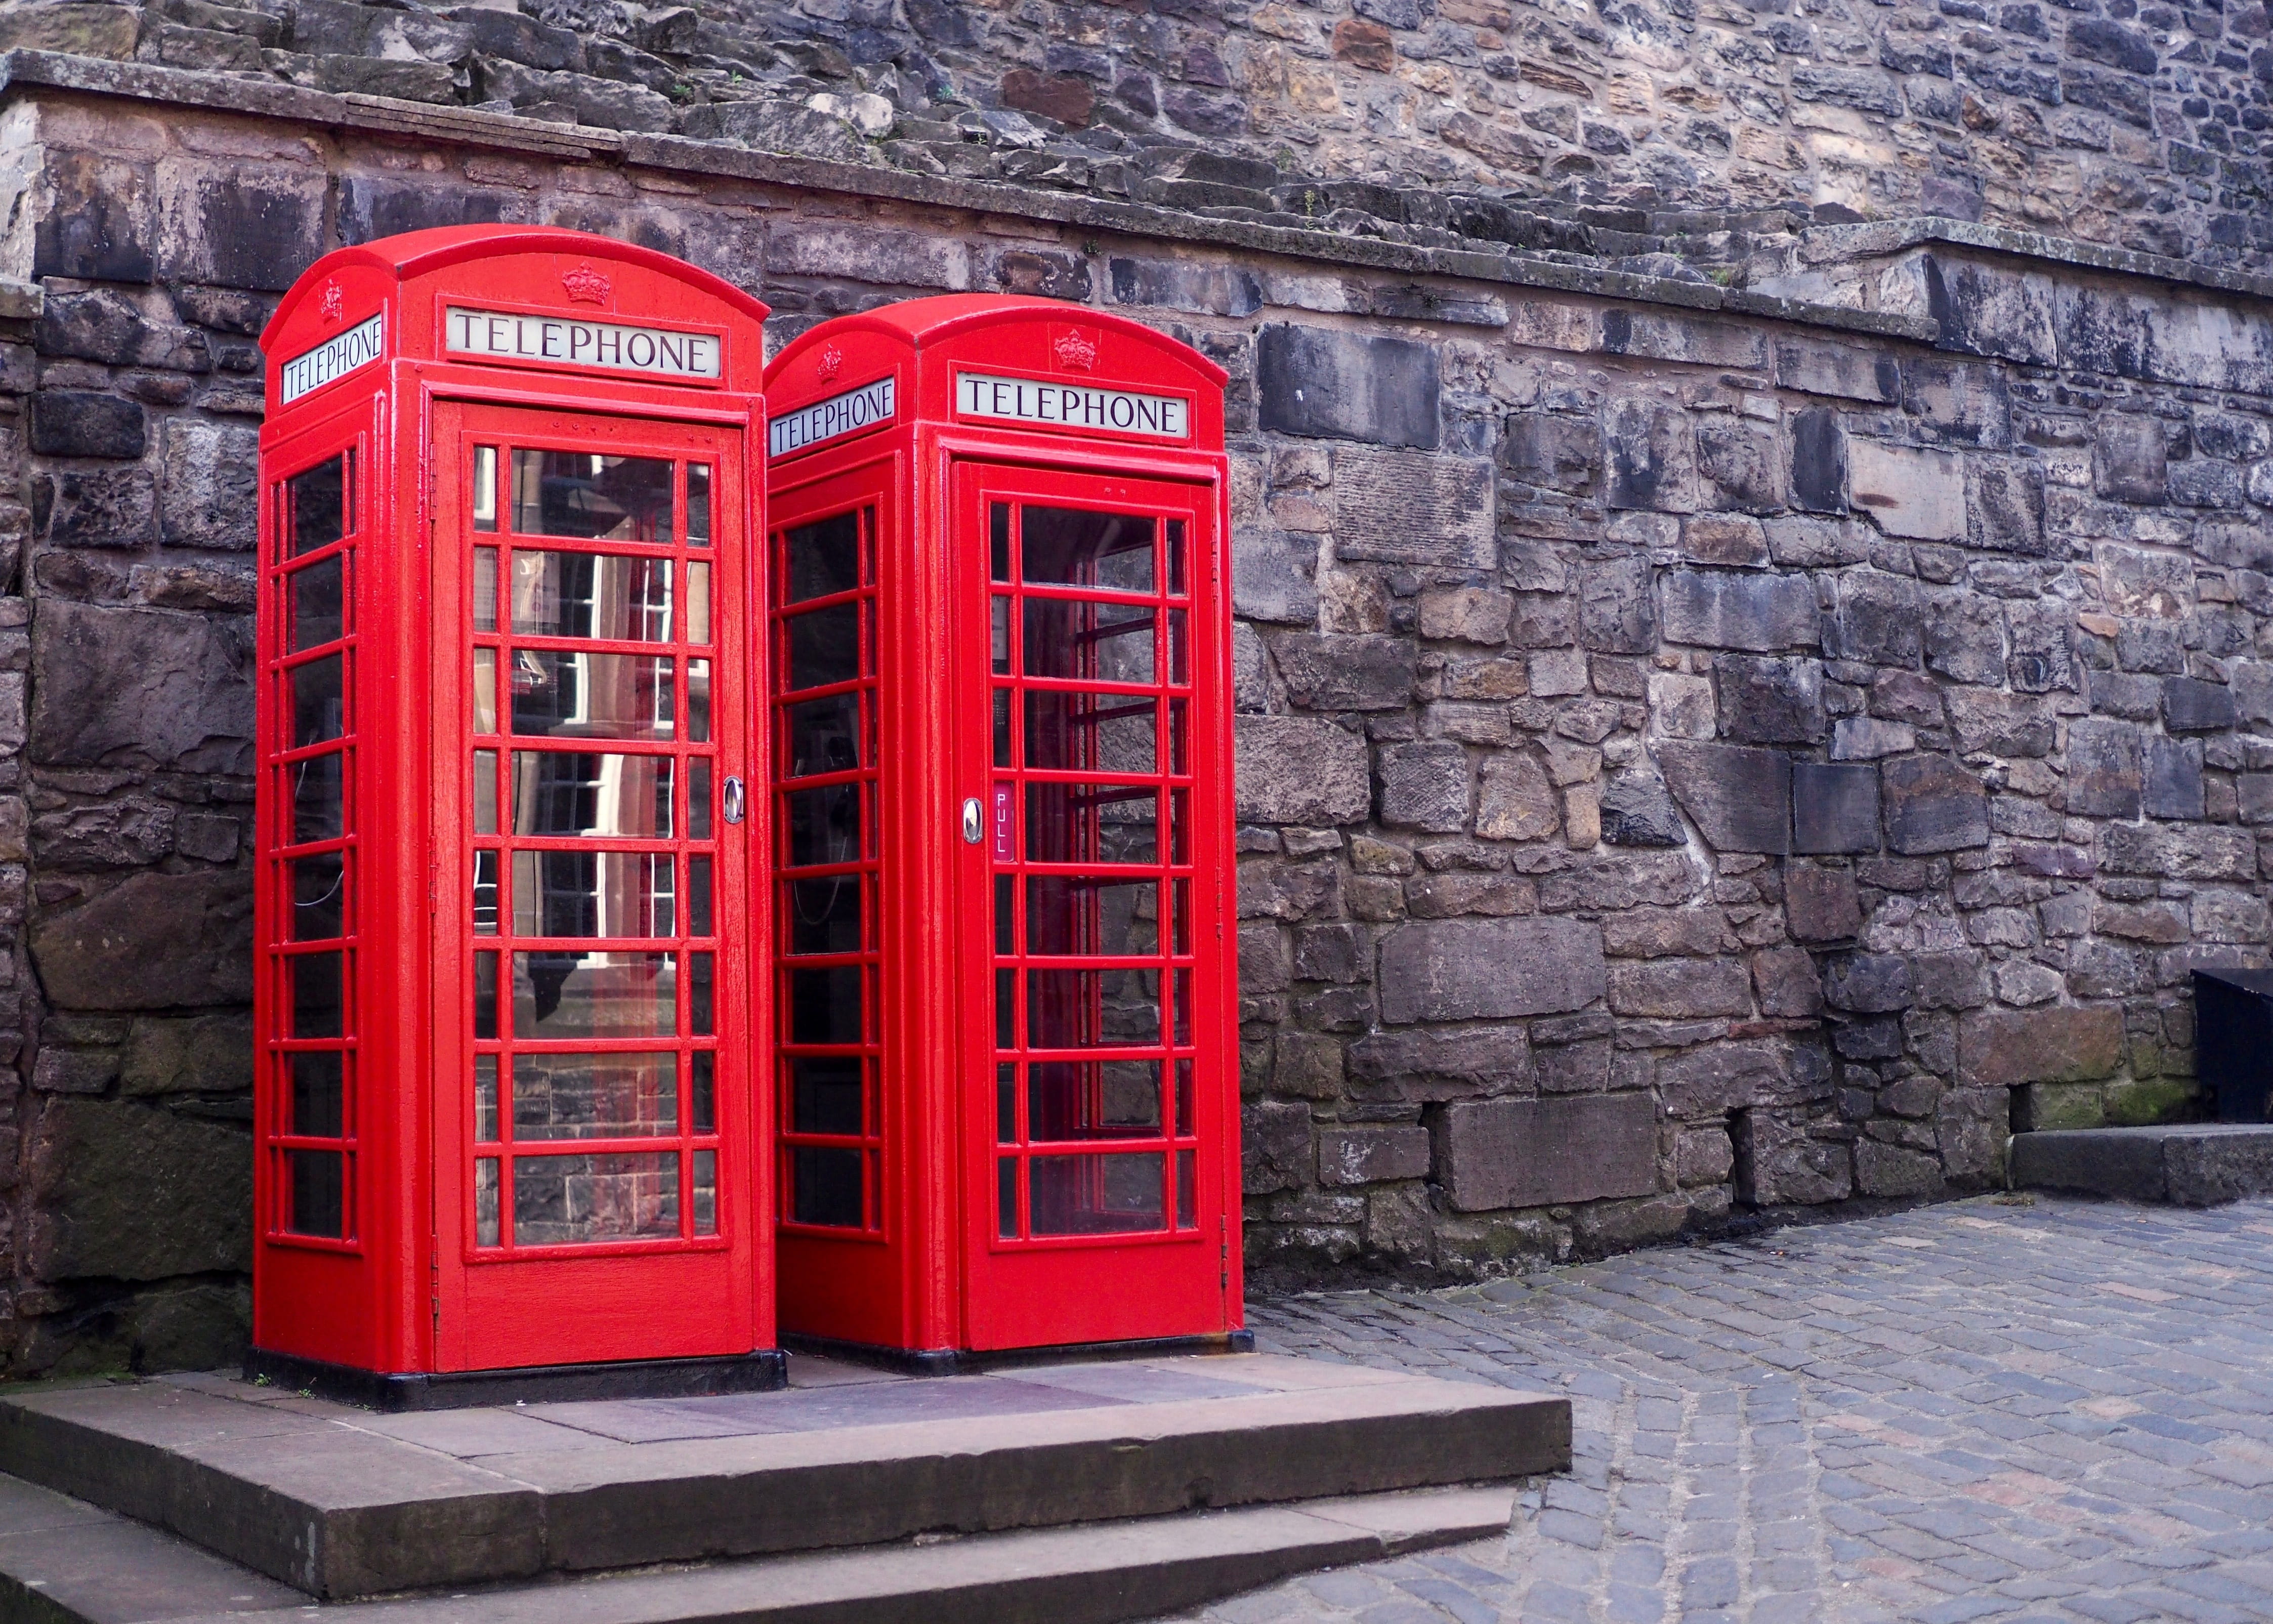 United Kingdom, Telephone Box, red telephone box, telephone Booth